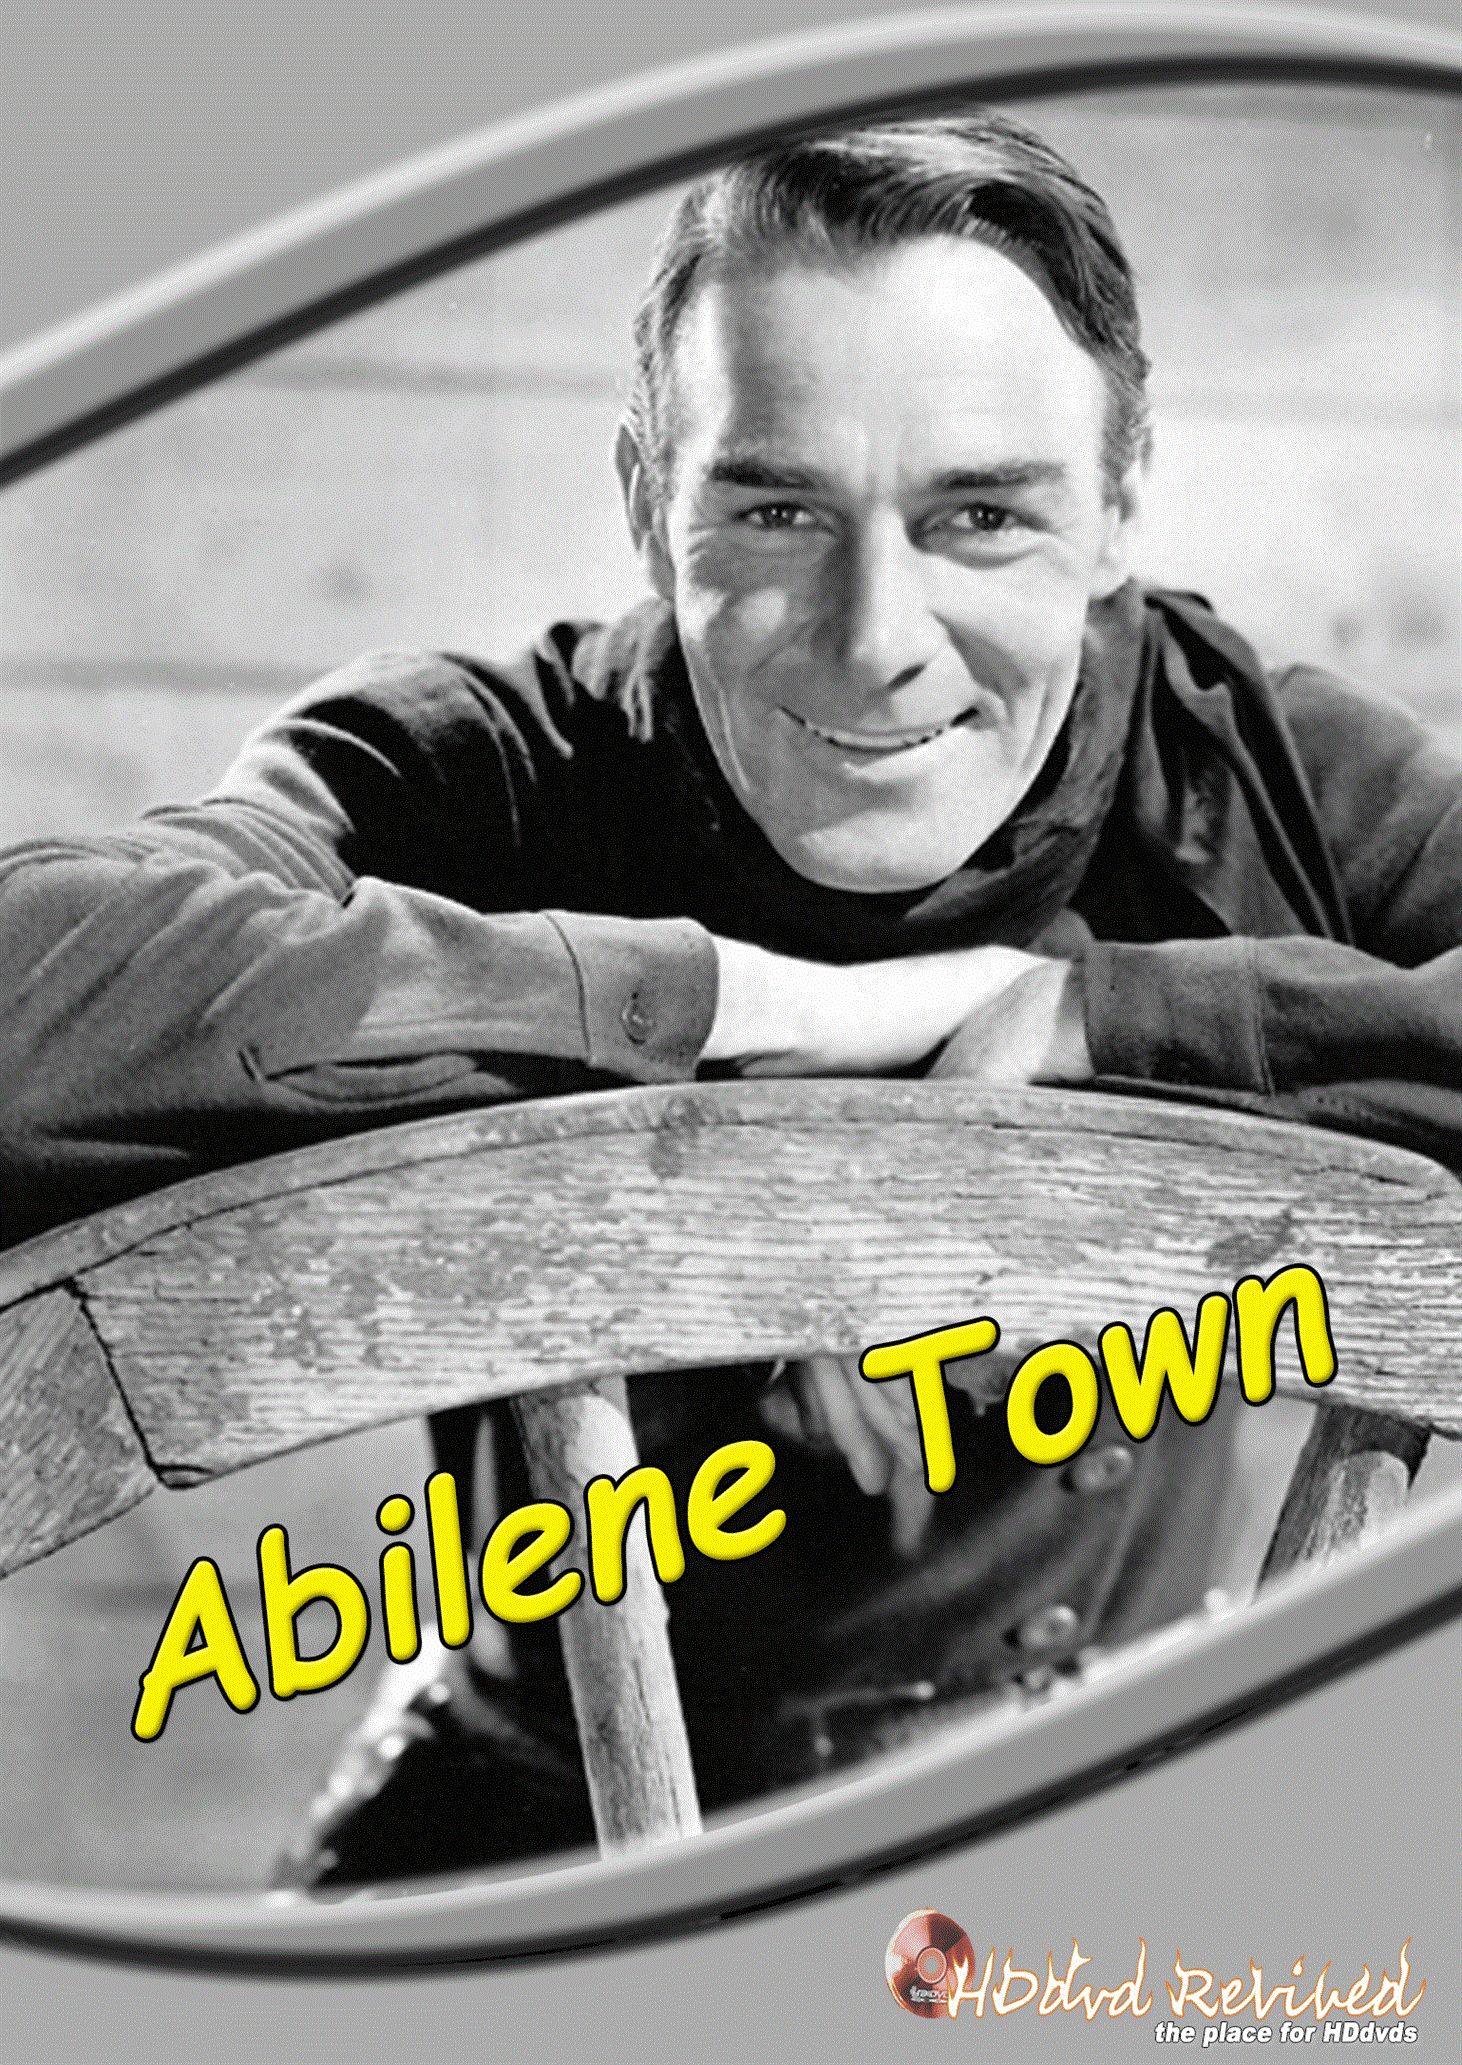 Abilene Town (1946) Standard DVD (HDDVD-Revived) UK Seller